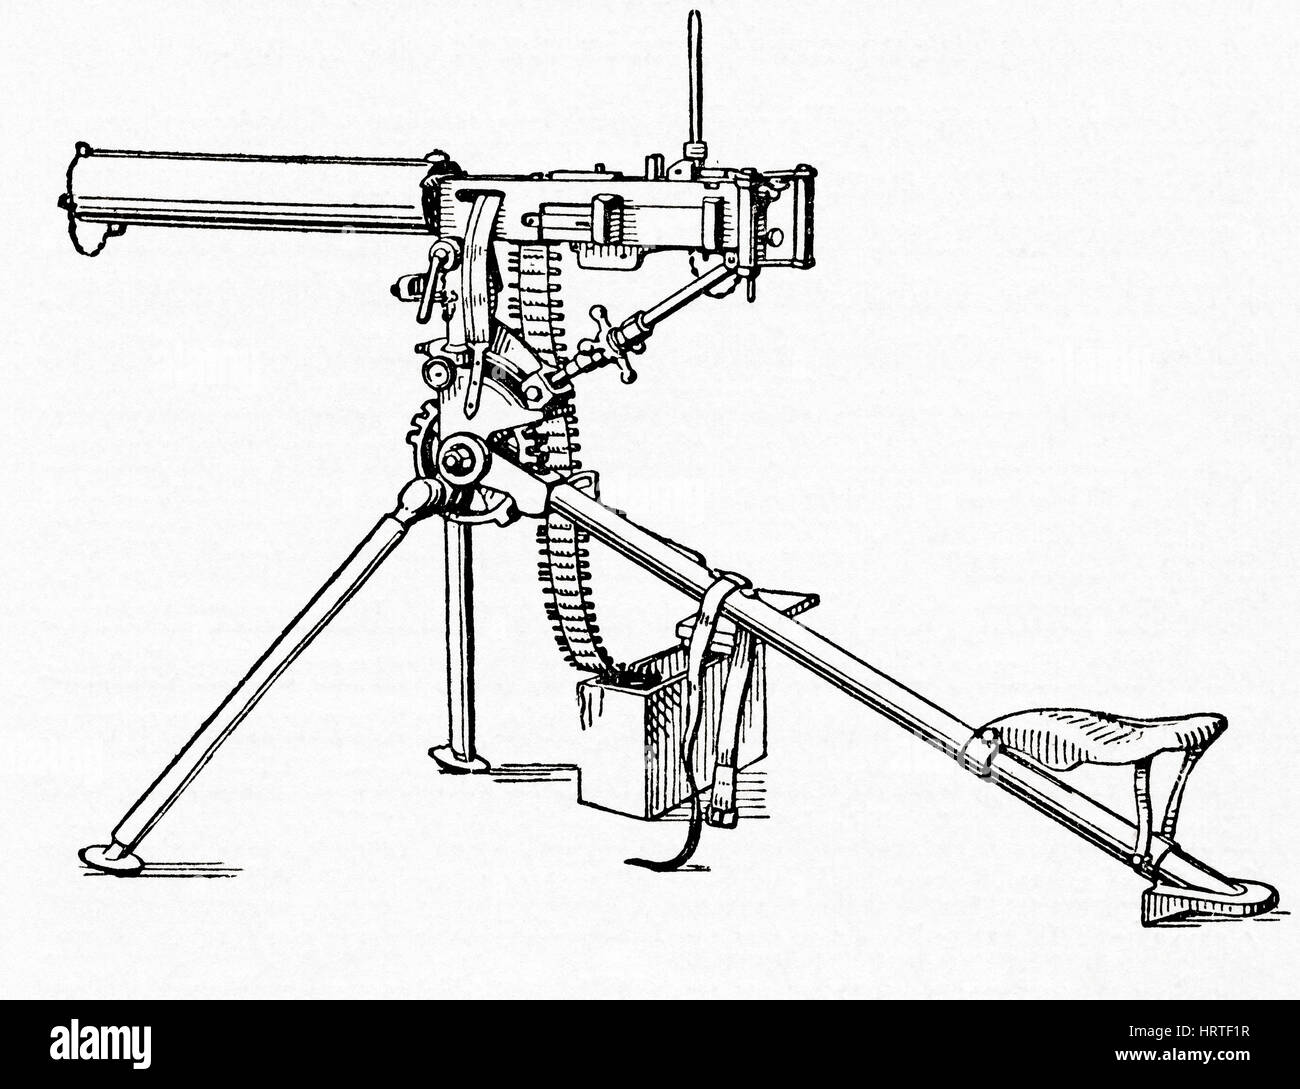 Eine Maschinengewehr montiert auf einem Stativ, während des ersten Weltkriegs verwendet. Aus Meyers Lexikon veröffentlicht 1927. Stockfoto